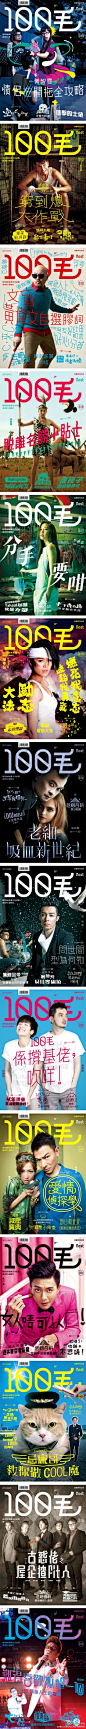 @100毛 杂志封面字体设计